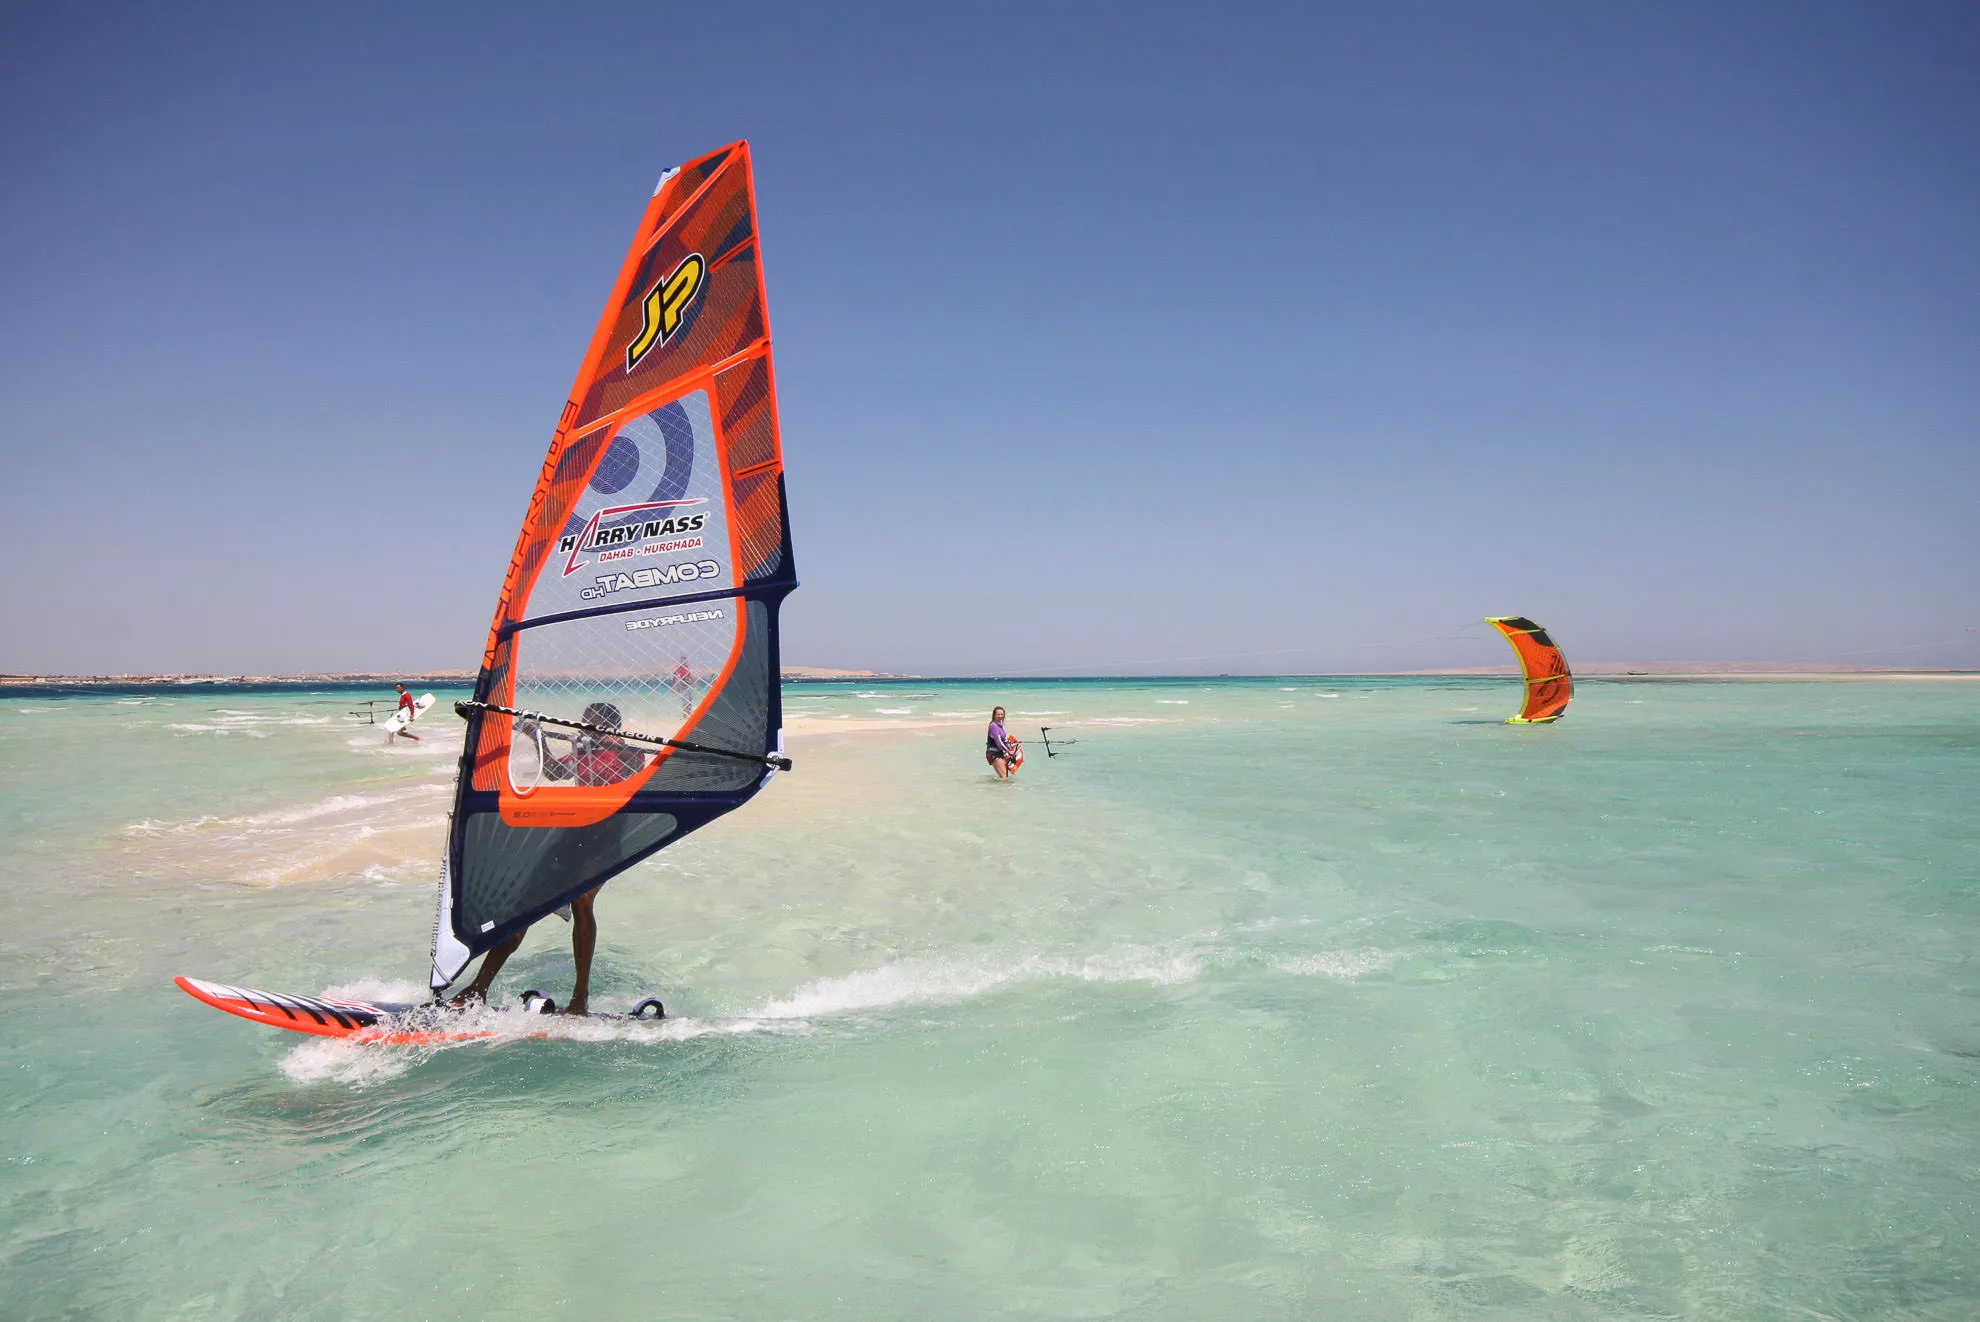 Harry Nass Dahab Windsurf & Kitesurf Center in Egypt, Africa | Kitesurfing,Windsurfing - Rated 2.5